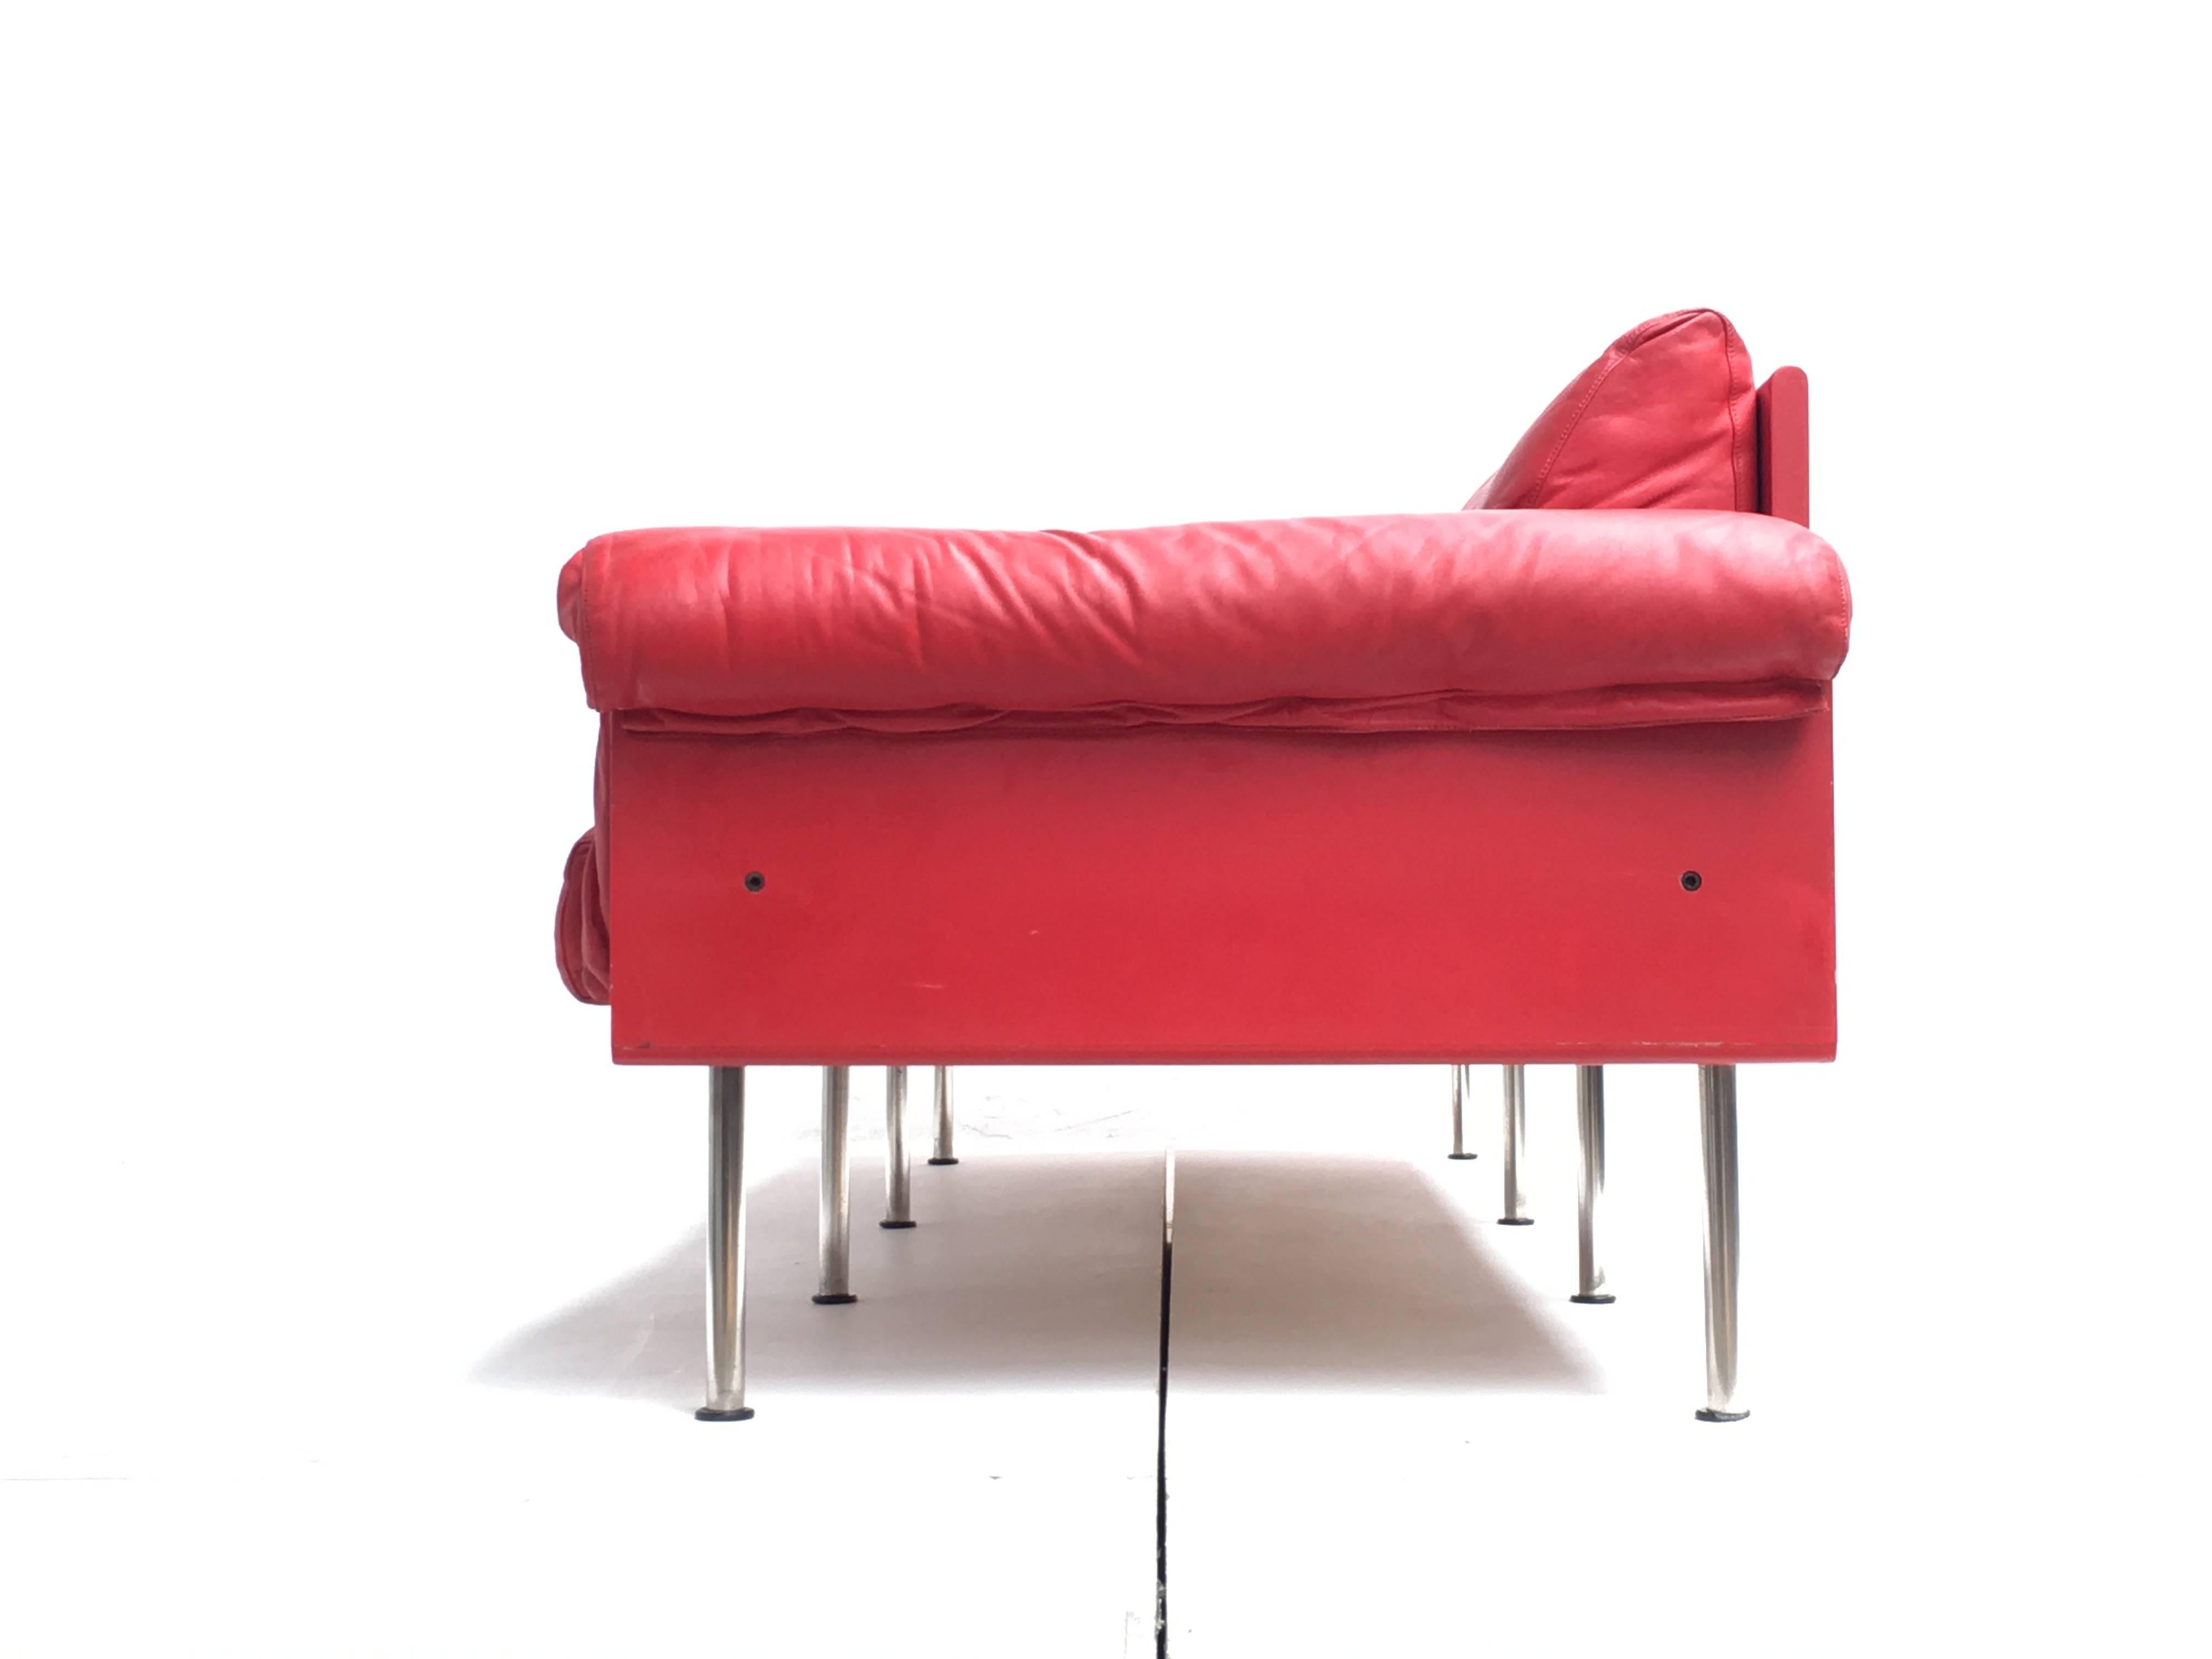 Dieses Sofa/Tagesbett 'Ateljee' wurde 1963 von Yrjö Kukkapuro für Haimi Oy in Helsinki entworfen.

Dieser Designklassiker ist eines der ikonischen Stücke von Yrjo Kukkapuro und ein originales Vintage-Stück, das in den 1960er oder 1970er Jahren